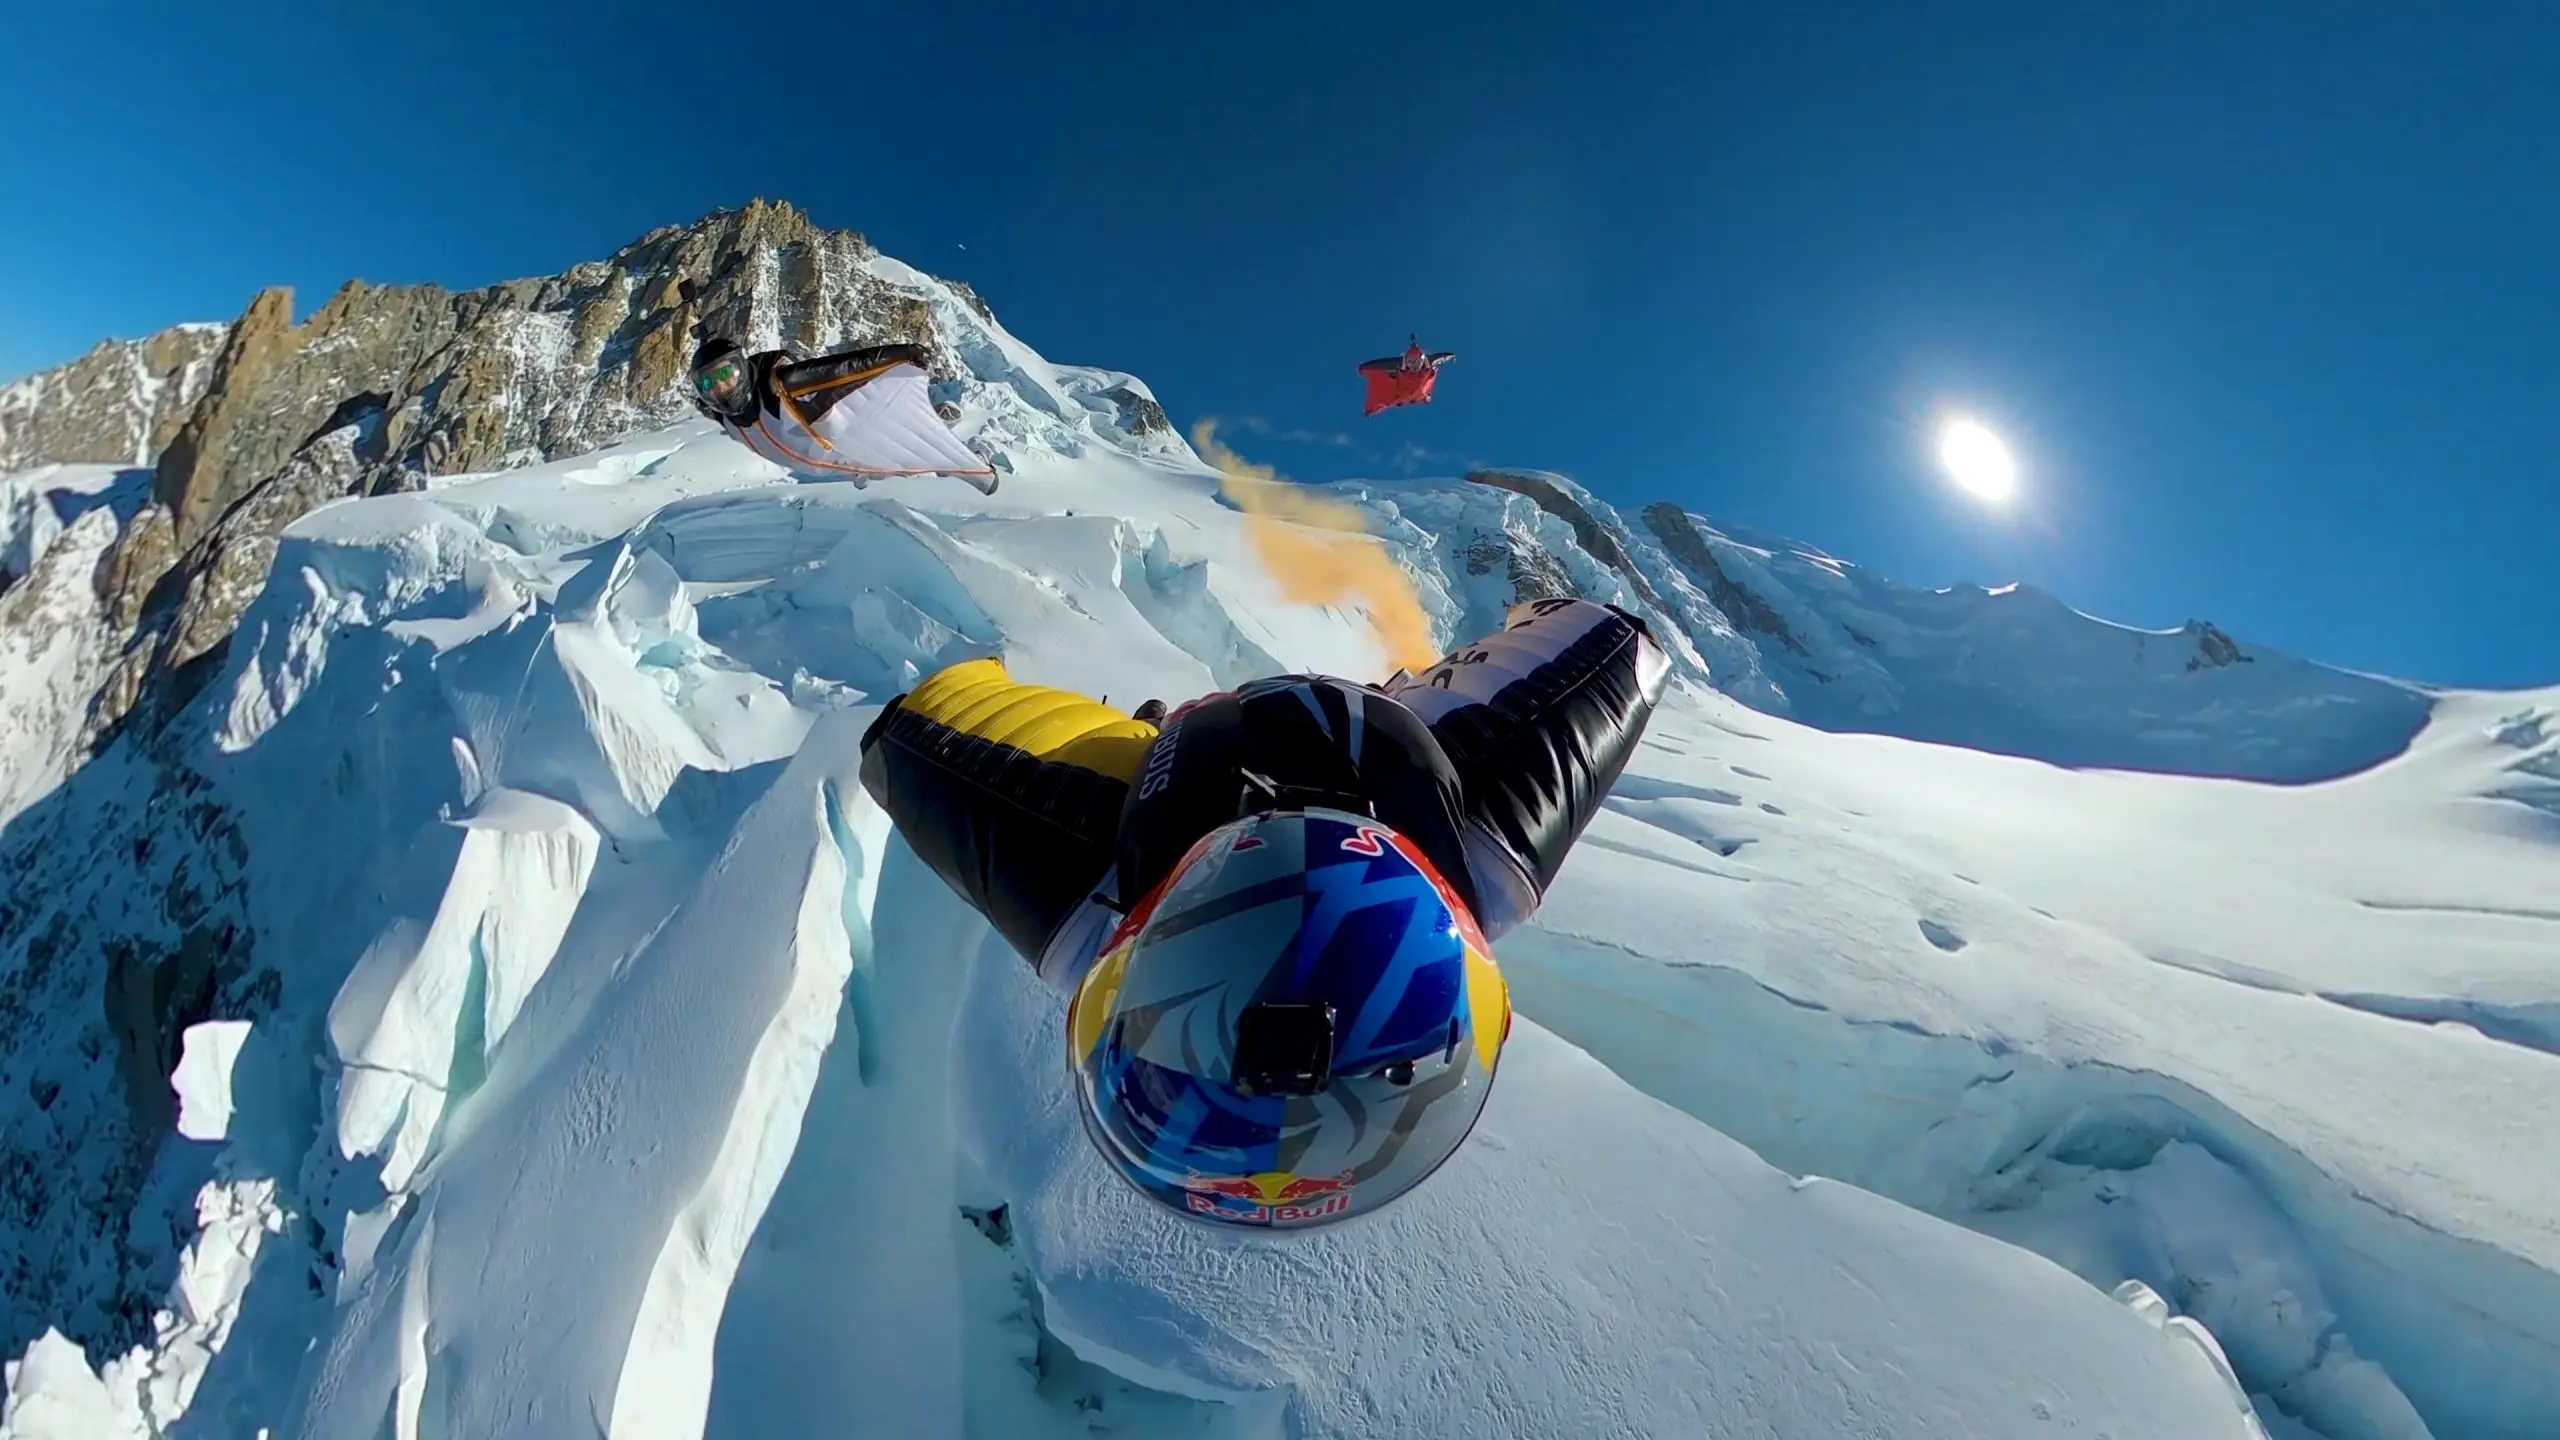 Survoler le Mont Blanc en wingsuit en 3 minutes ? C’est possible !